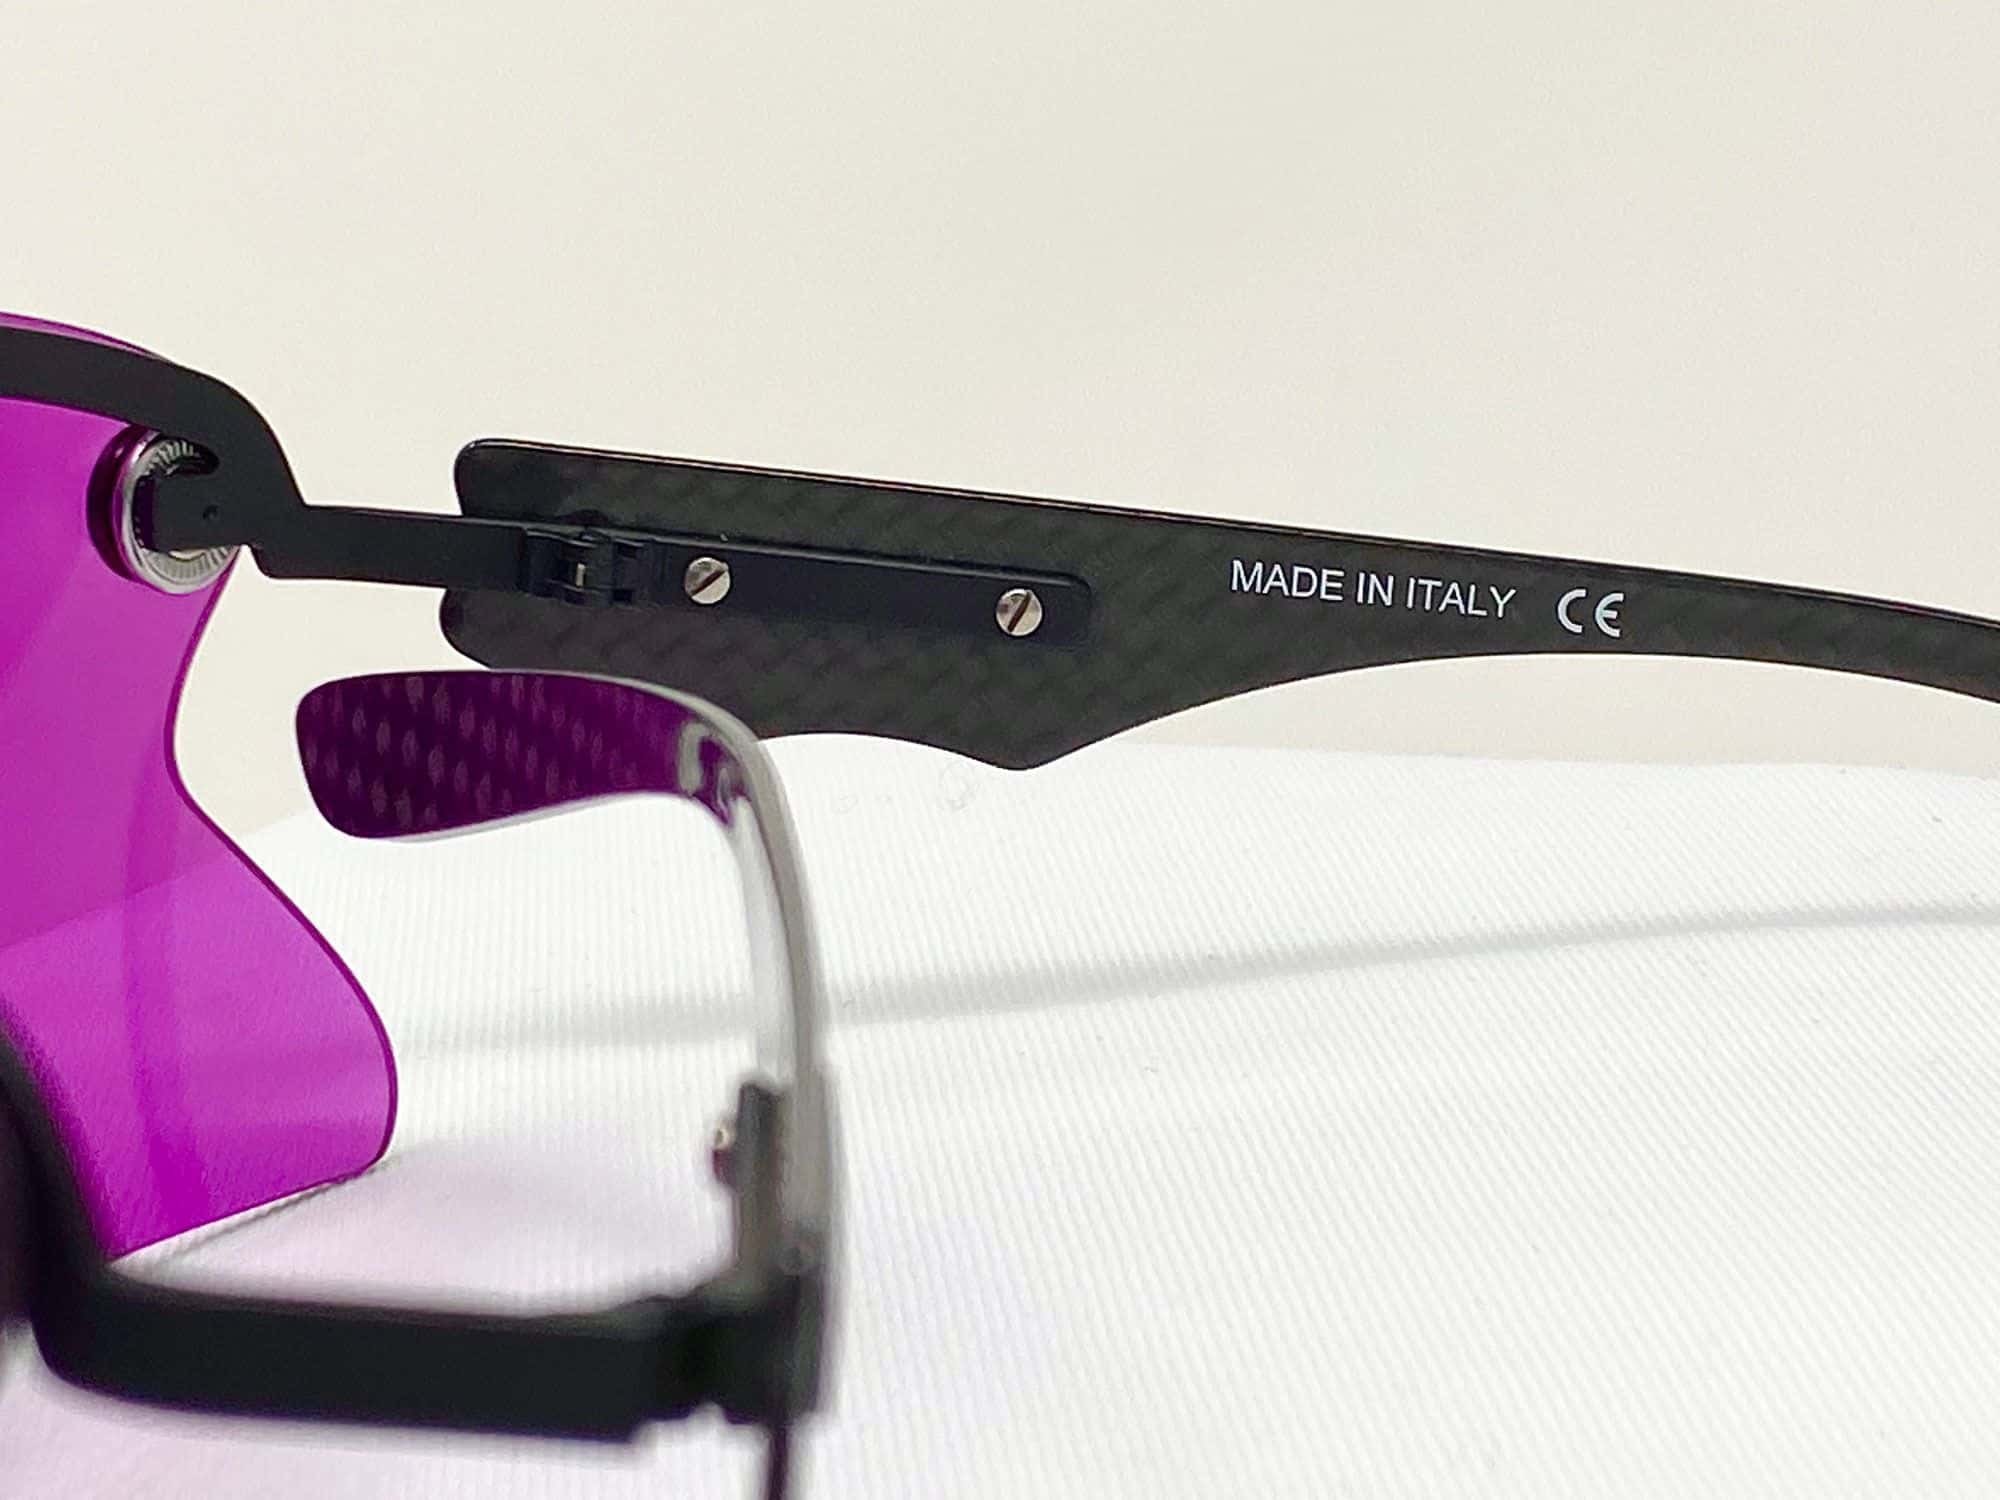 Tutti gli occhiali da tiro Castellani, compreso C-Mask Pro sono made in Italy.